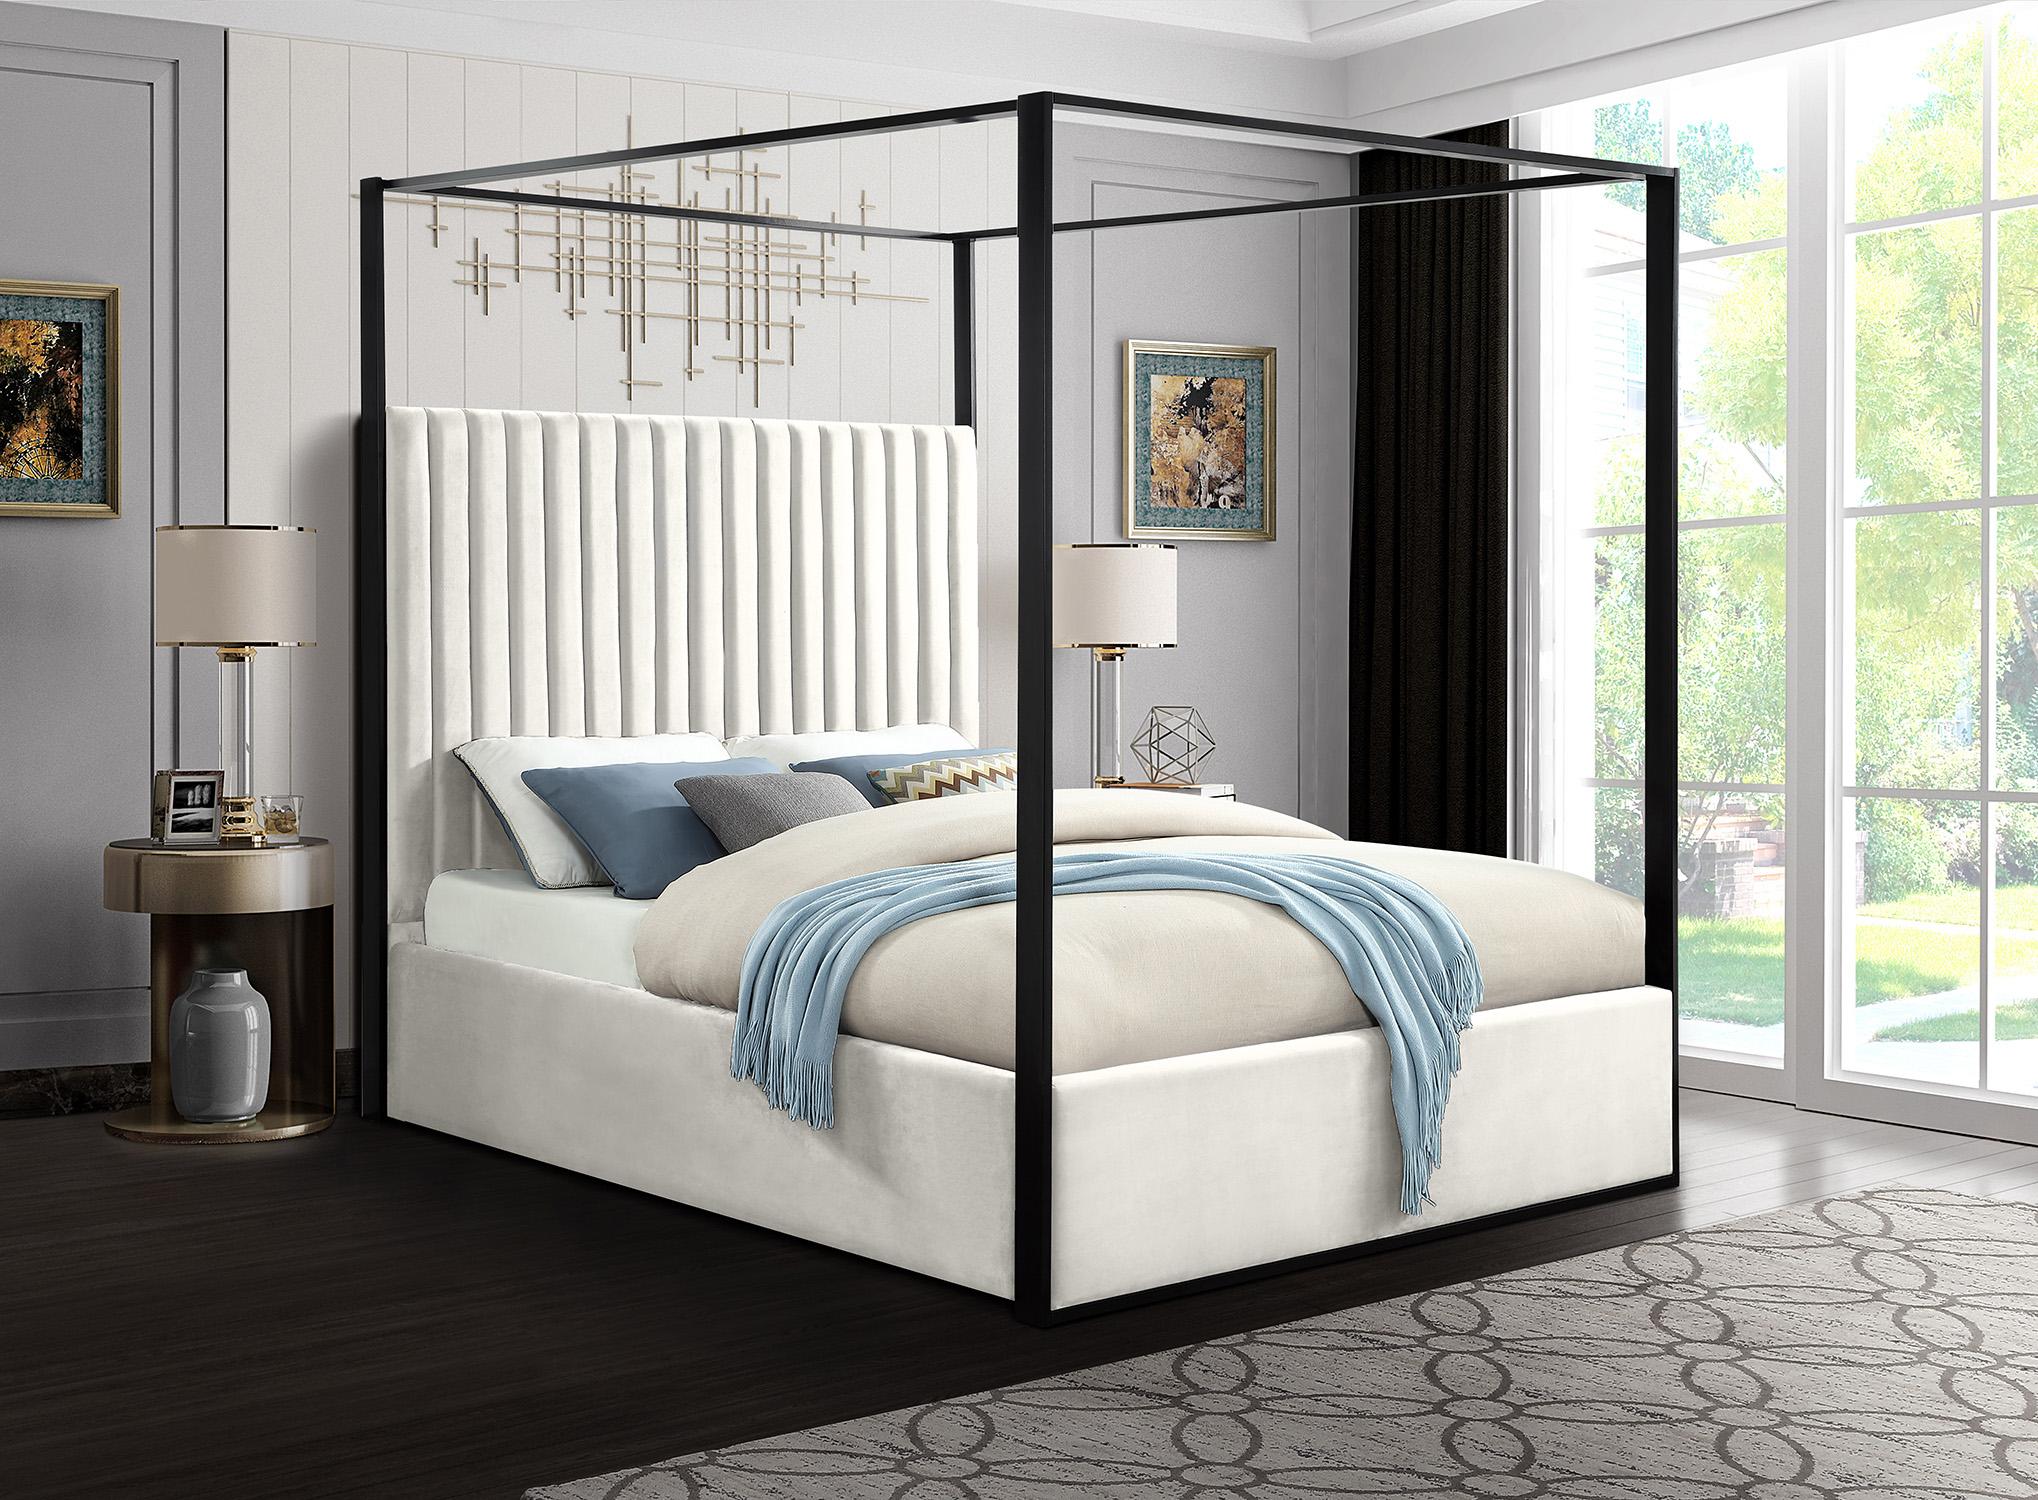 

    
Meridian Furniture JAX Cream-Q Canopy Bed Cream/Black JaxCream-Q
